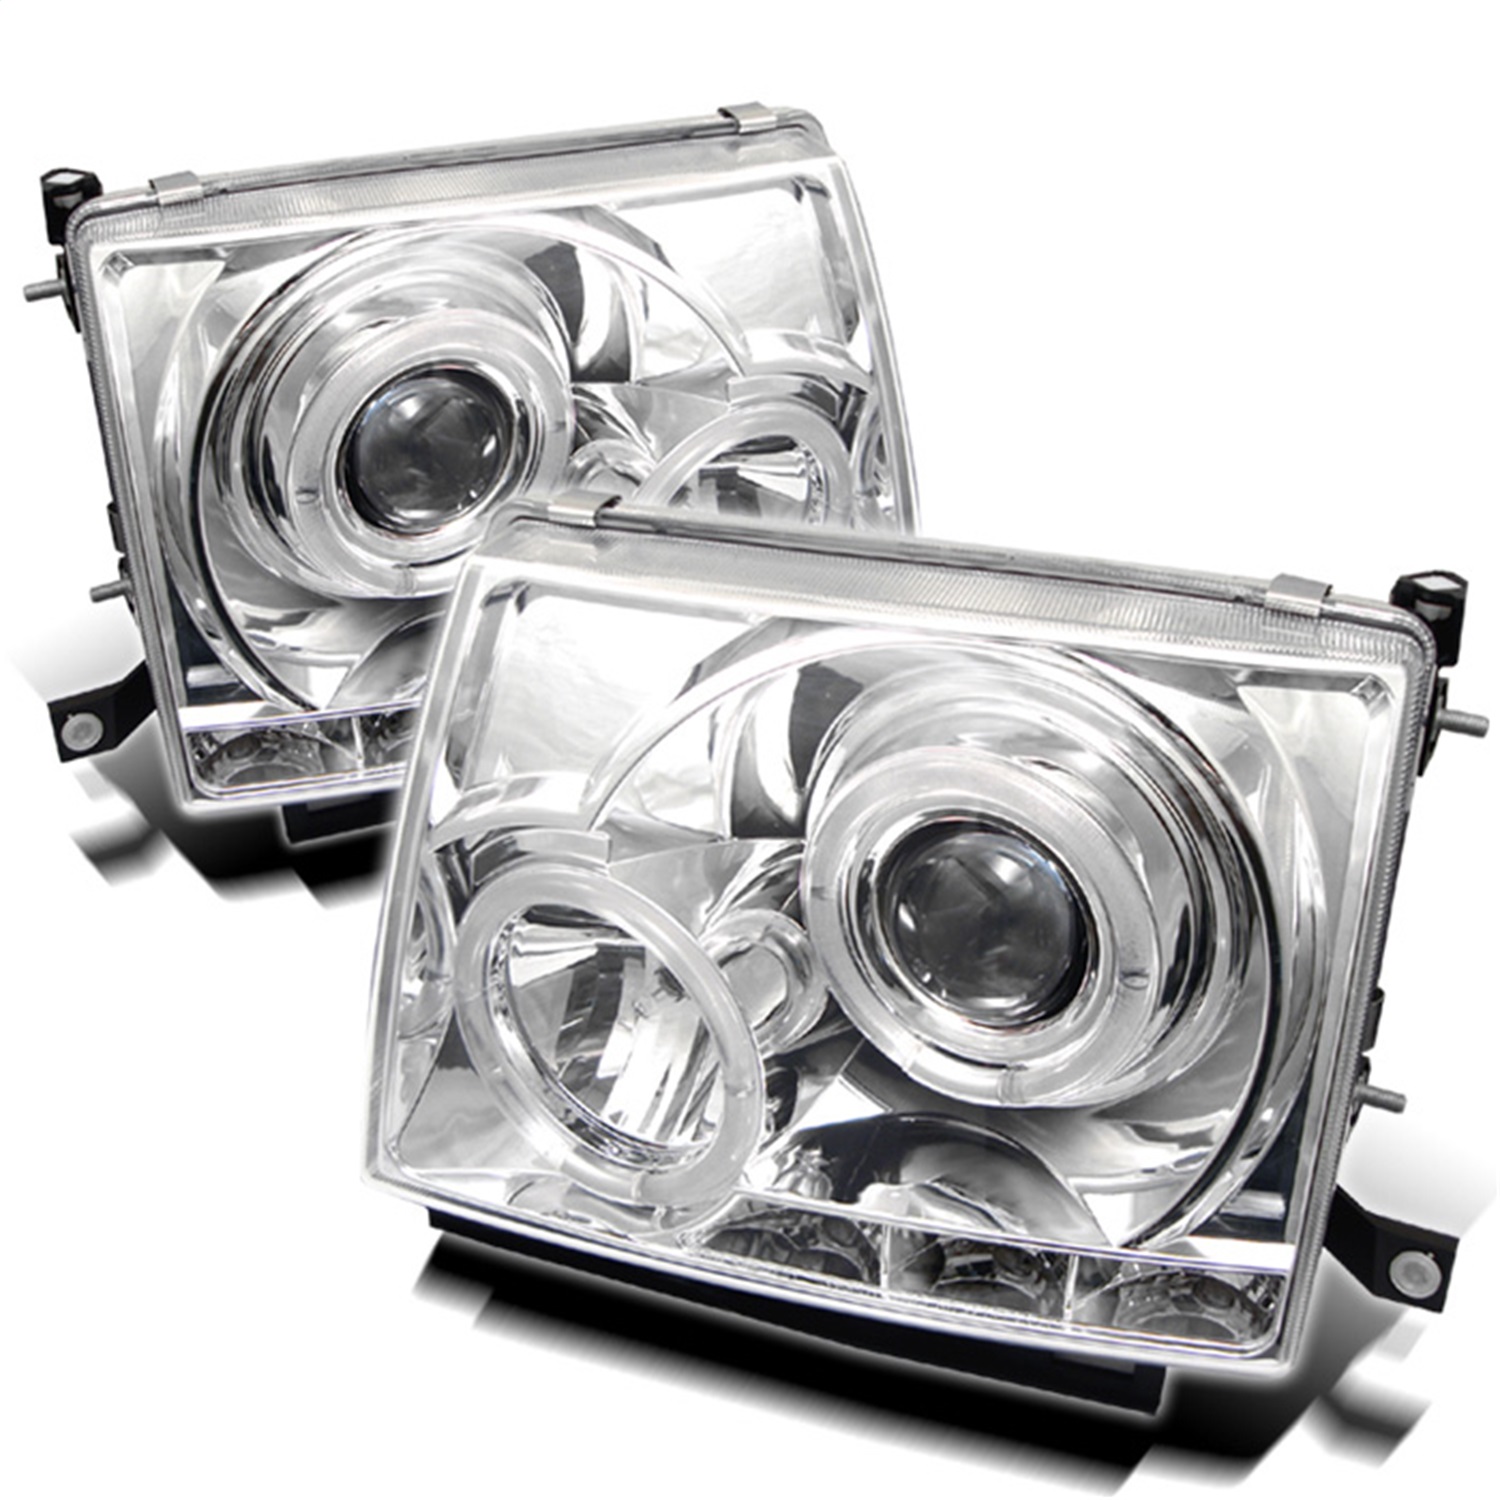 Spyder Auto 5011954 Halo LED Projector Headlights Fits 97-00 Tacoma